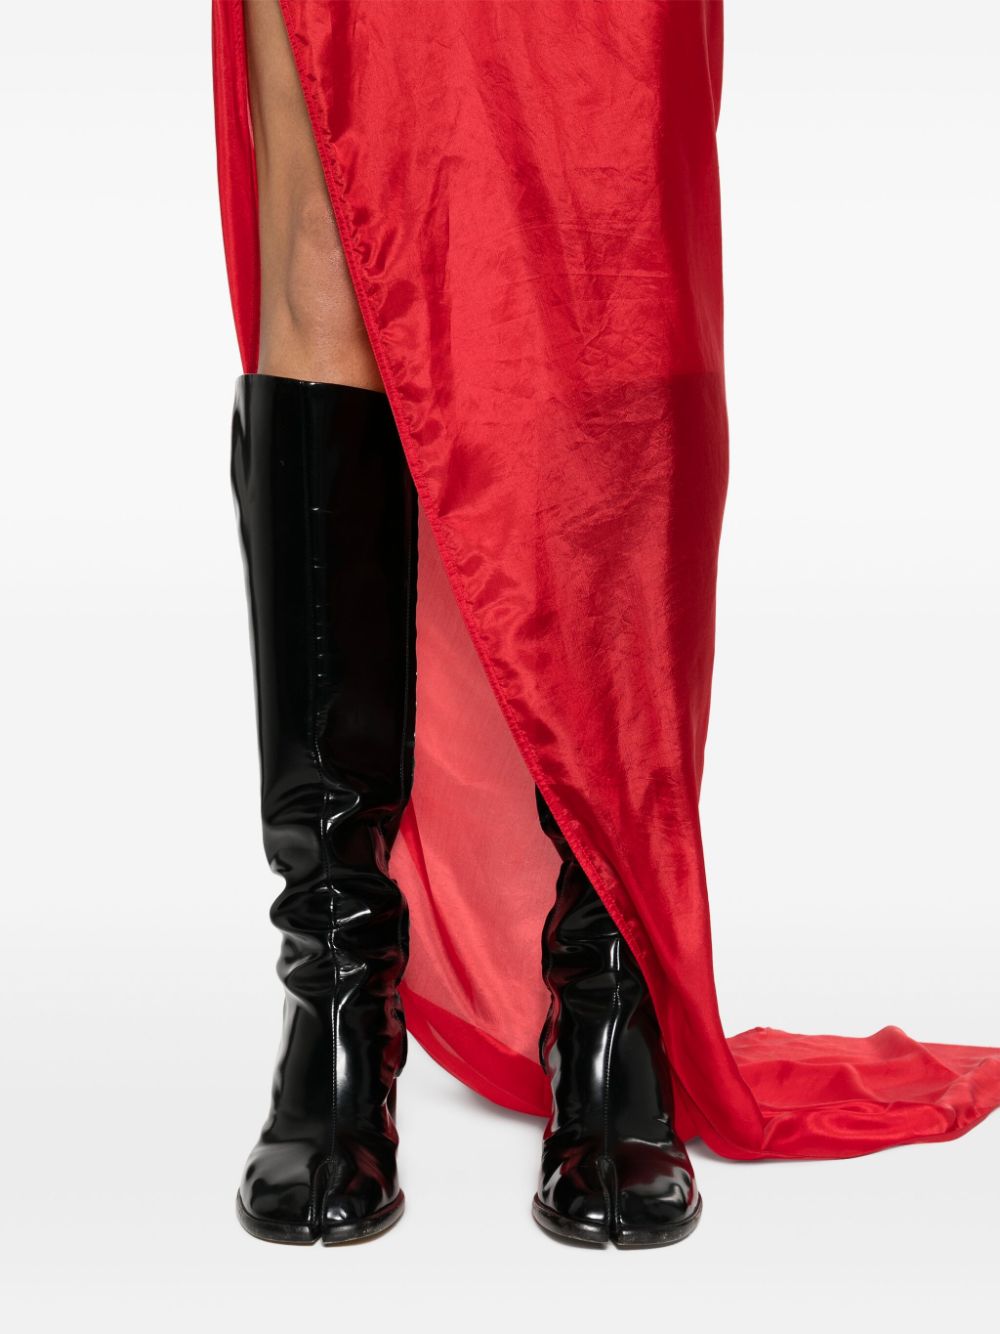 فستان ماكسي أحمر حريري بتصميم نصف شفاف وطول يصل للأرض